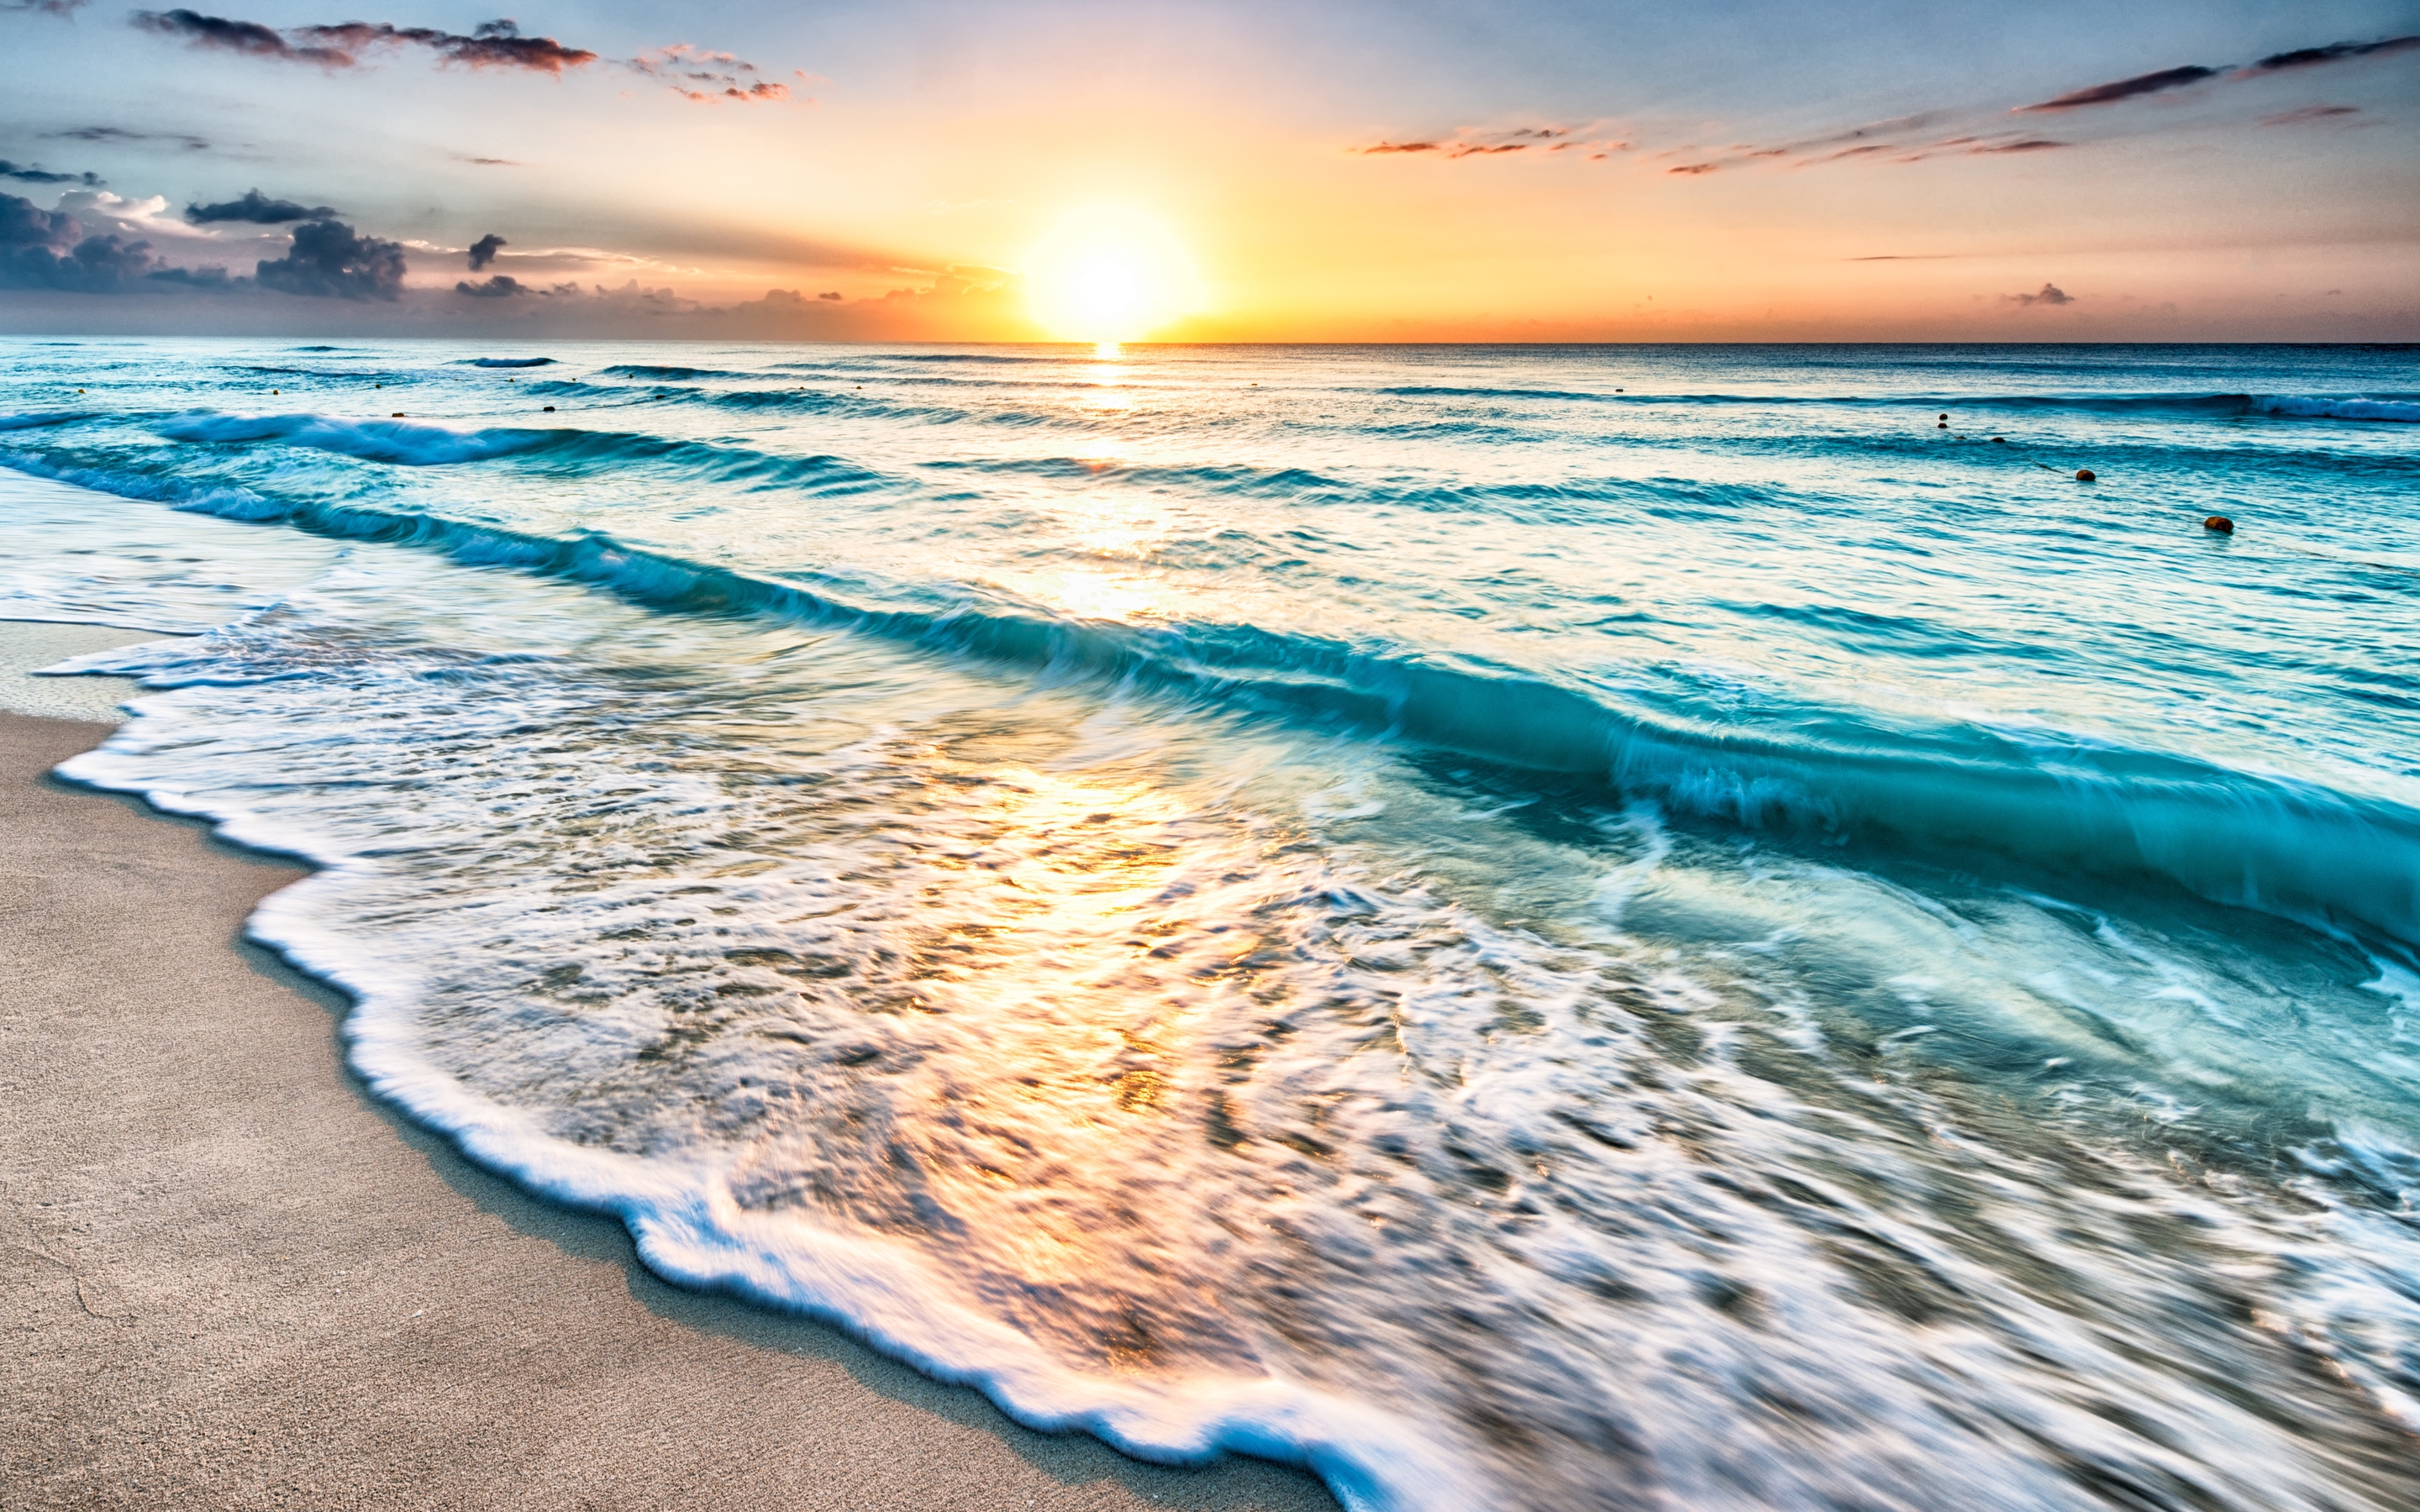 Картинка: Вода, море, океан, волны, пена, суша, песок, небо, закат, горизонт, пейзаж